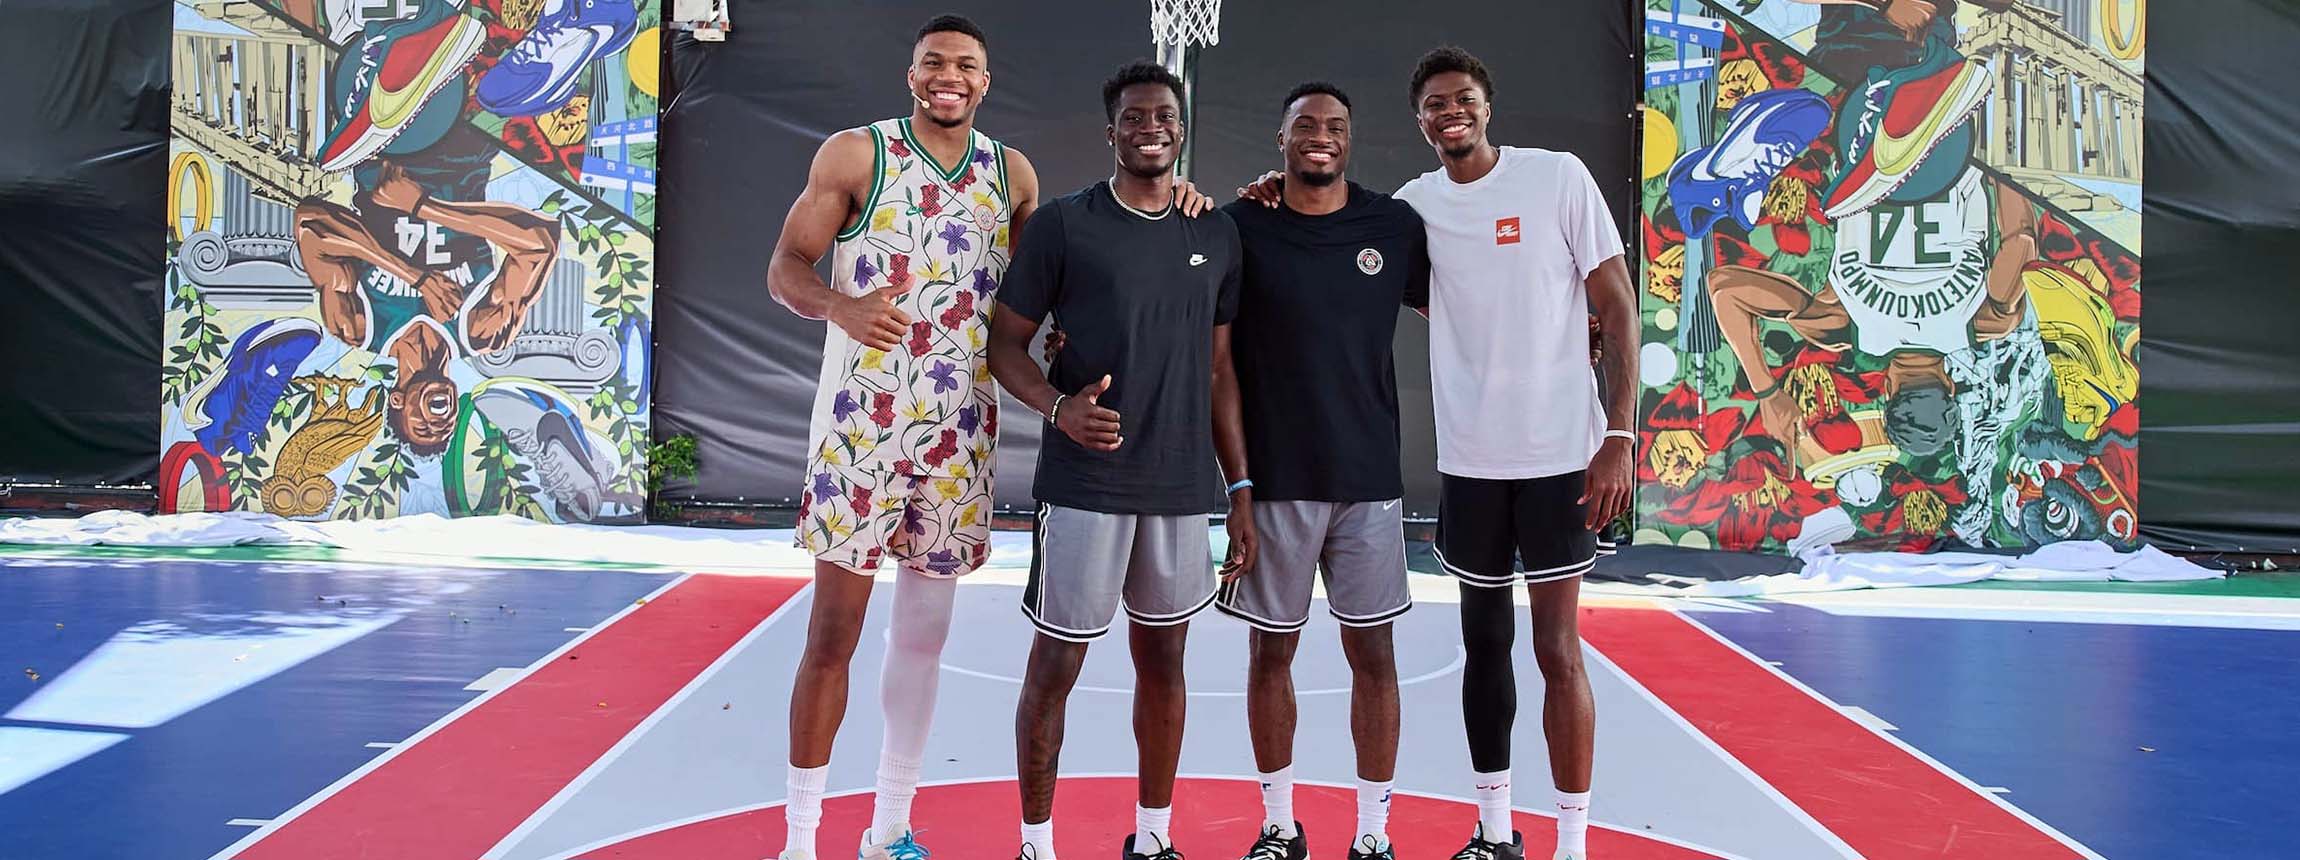 Nike basketball’s signature athletes